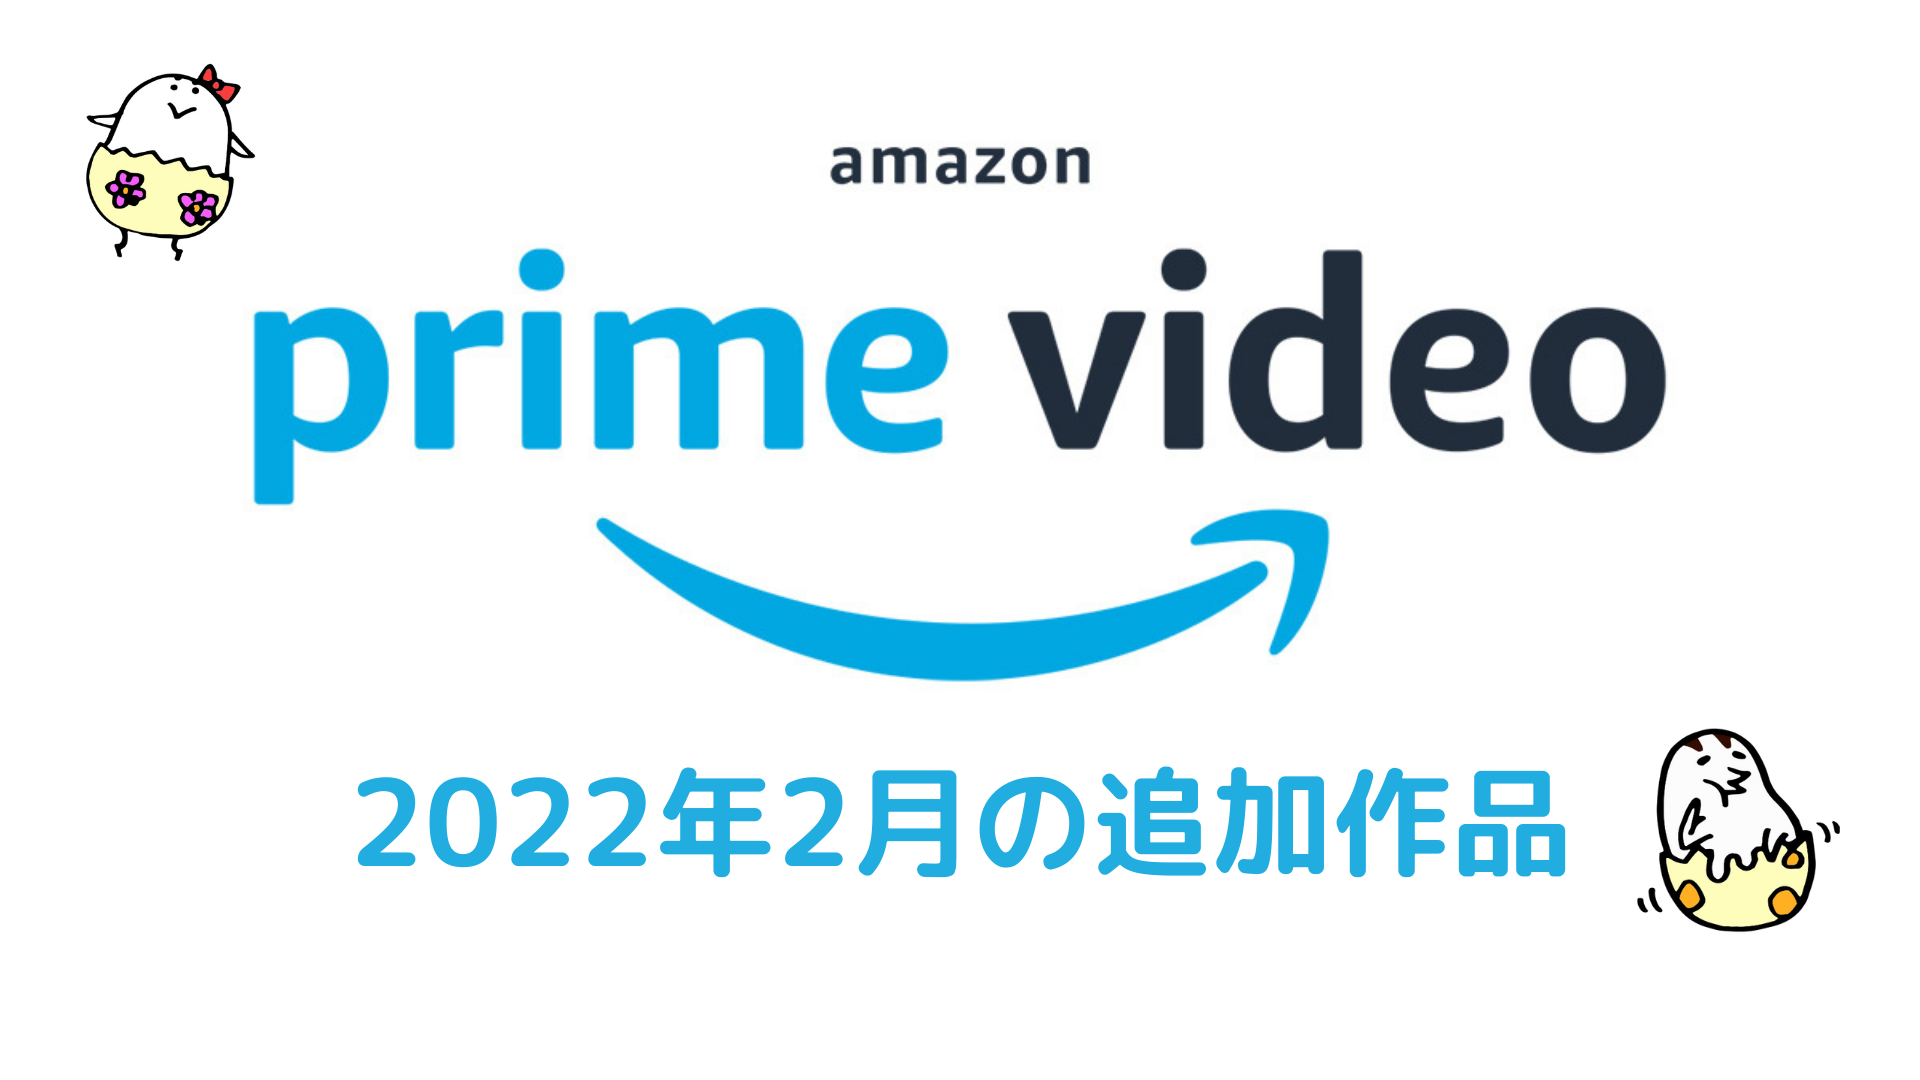 Amazonプライムビデオ 2022年2月配信作品一覧 『ポケモン映画 全作』『新解釈・三國志』『アバランチ』など